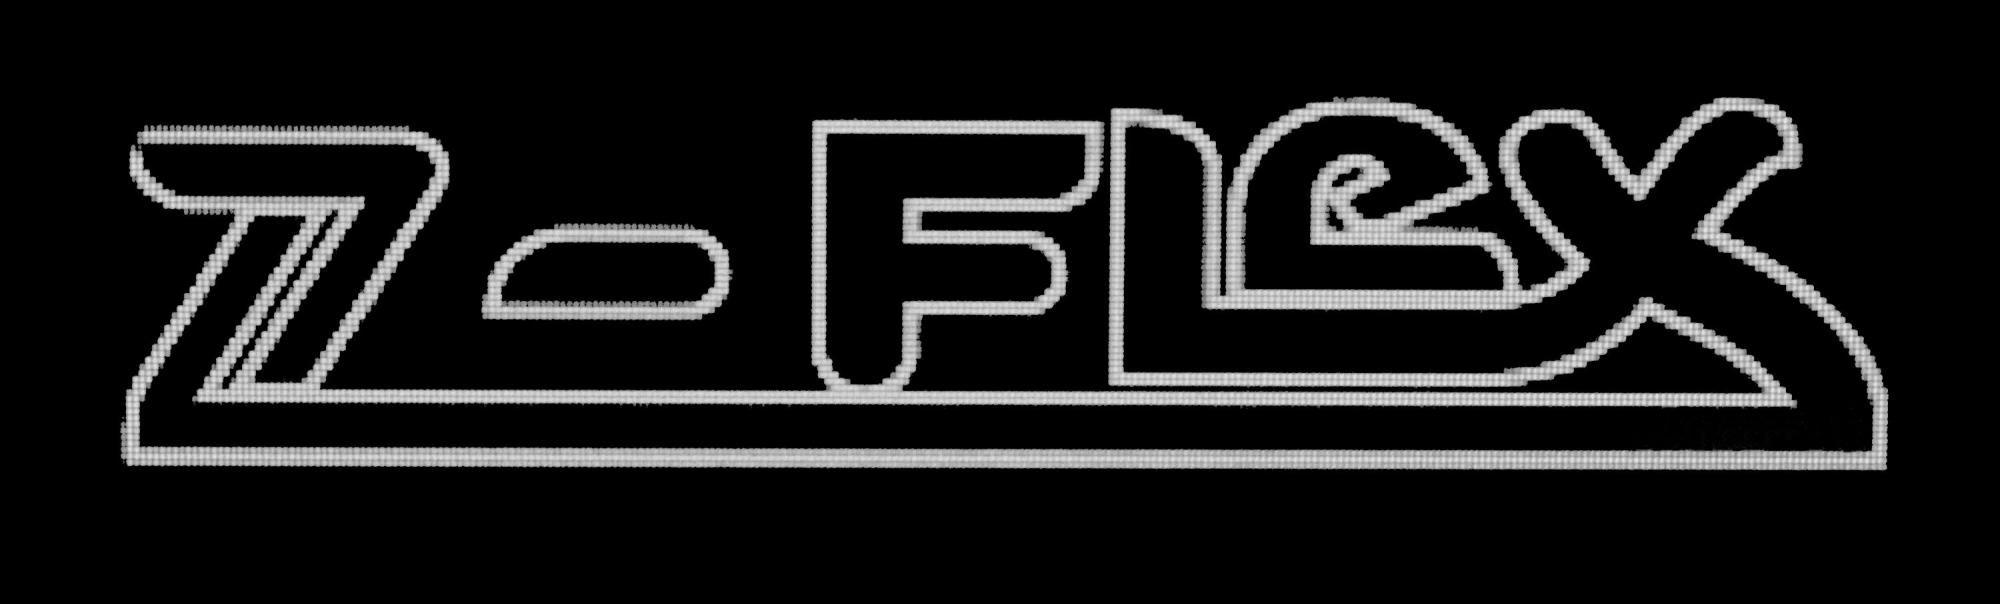 Z-Flex Logo - Z Flex Logos